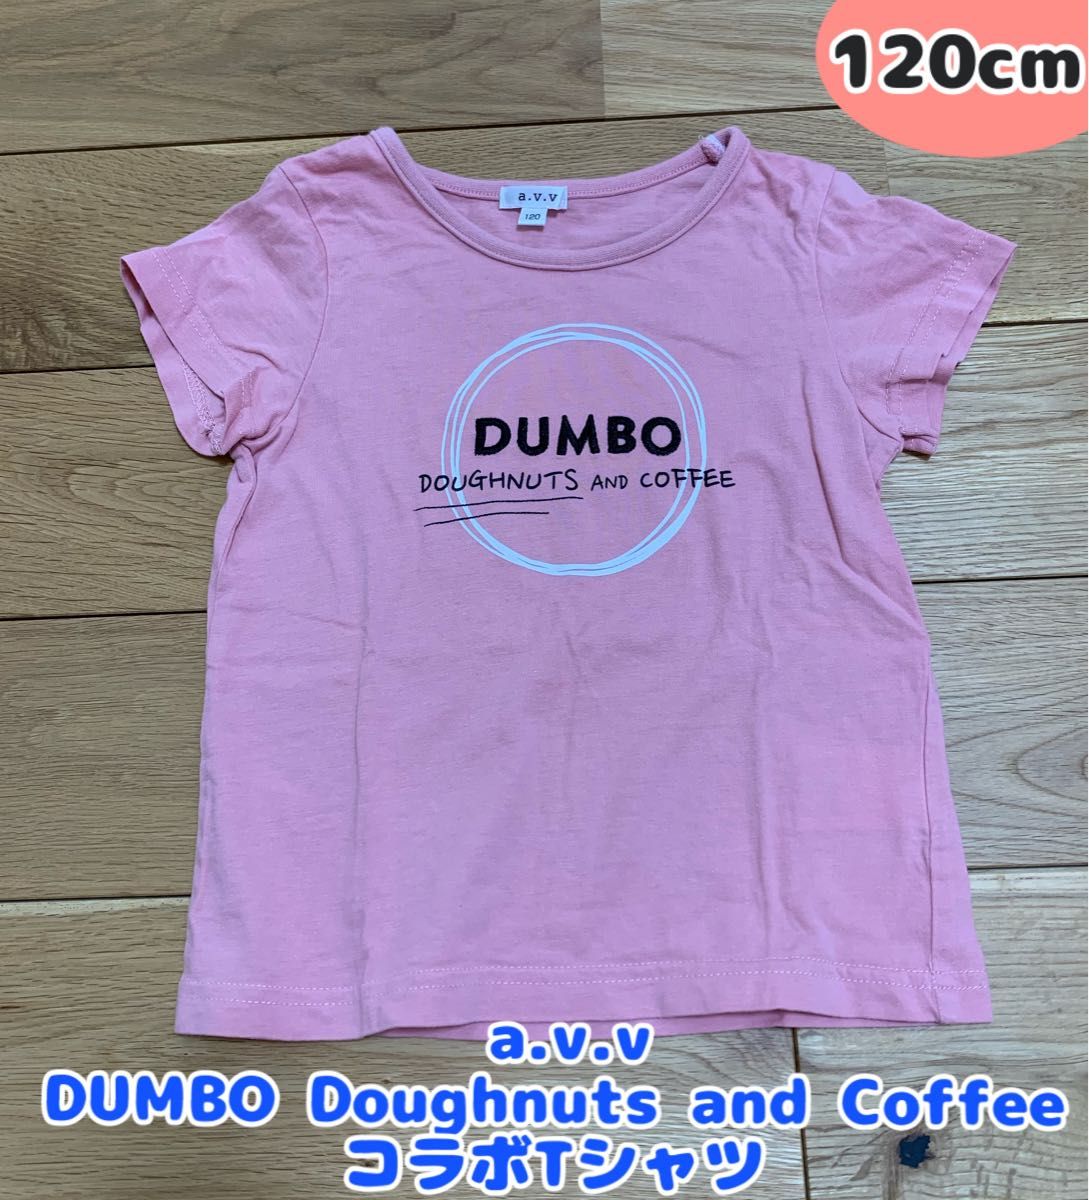  a.v.v（アー・ヴェ・ヴェ）DUMBO Doughnuts and CoffeeコラボTシャツ 120cm